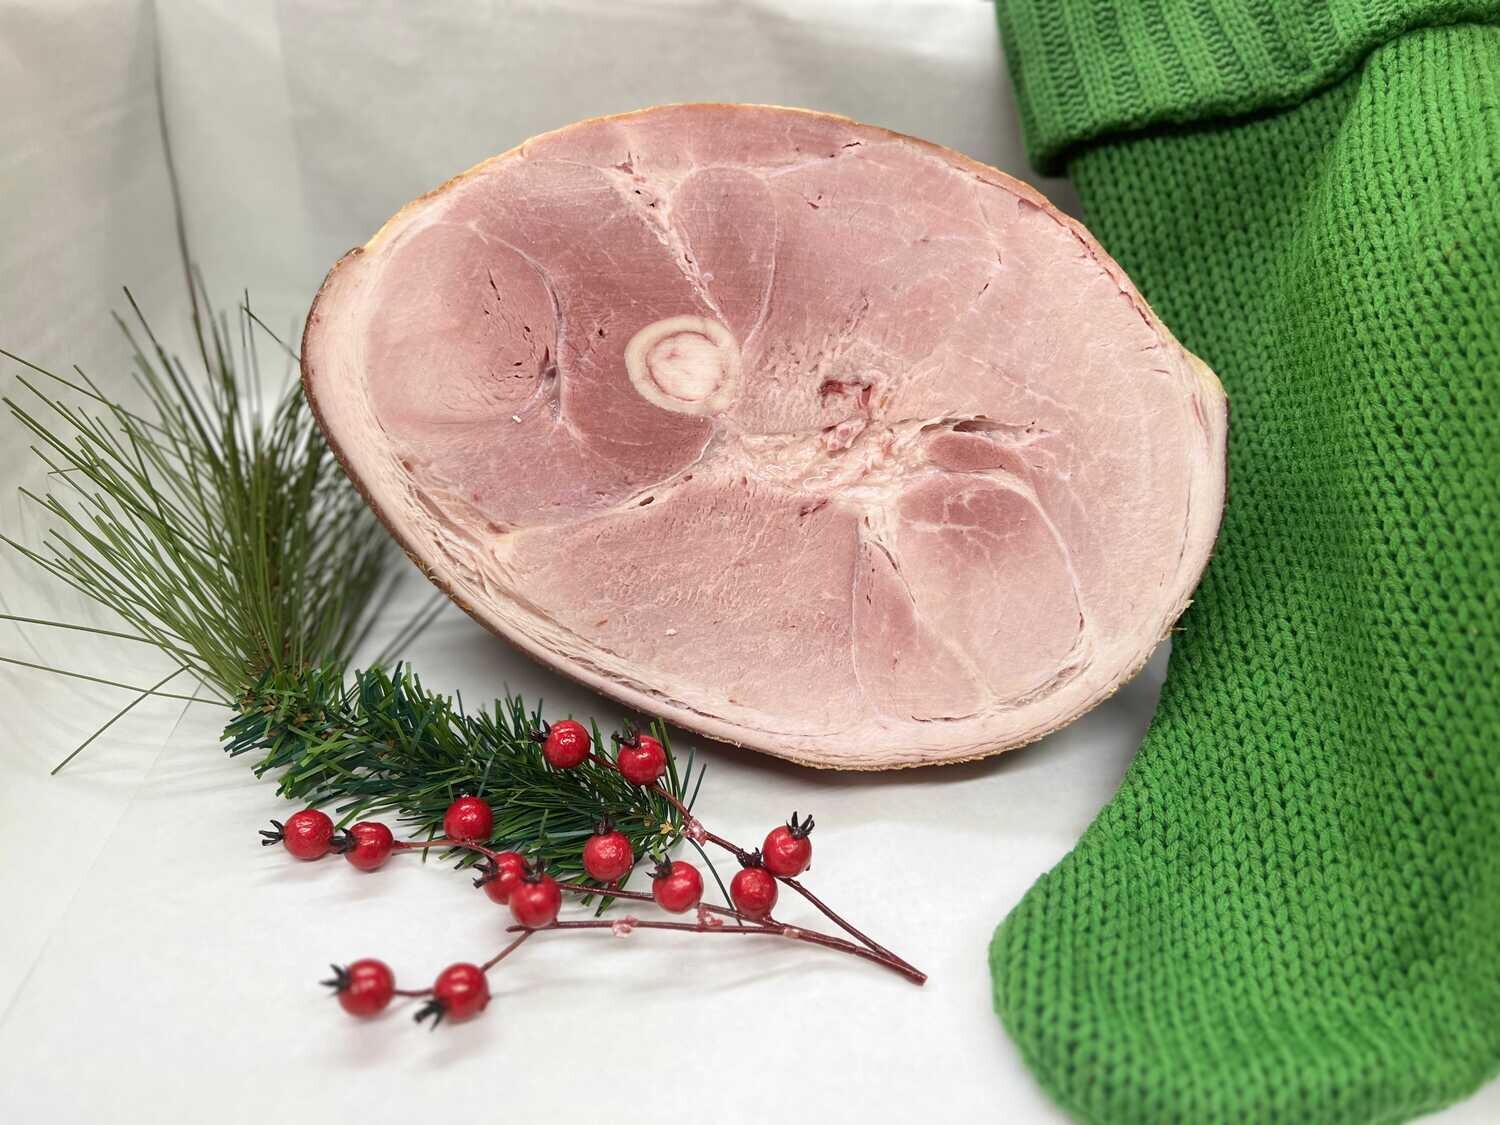 Half Bone-In Ham $5.29/lb